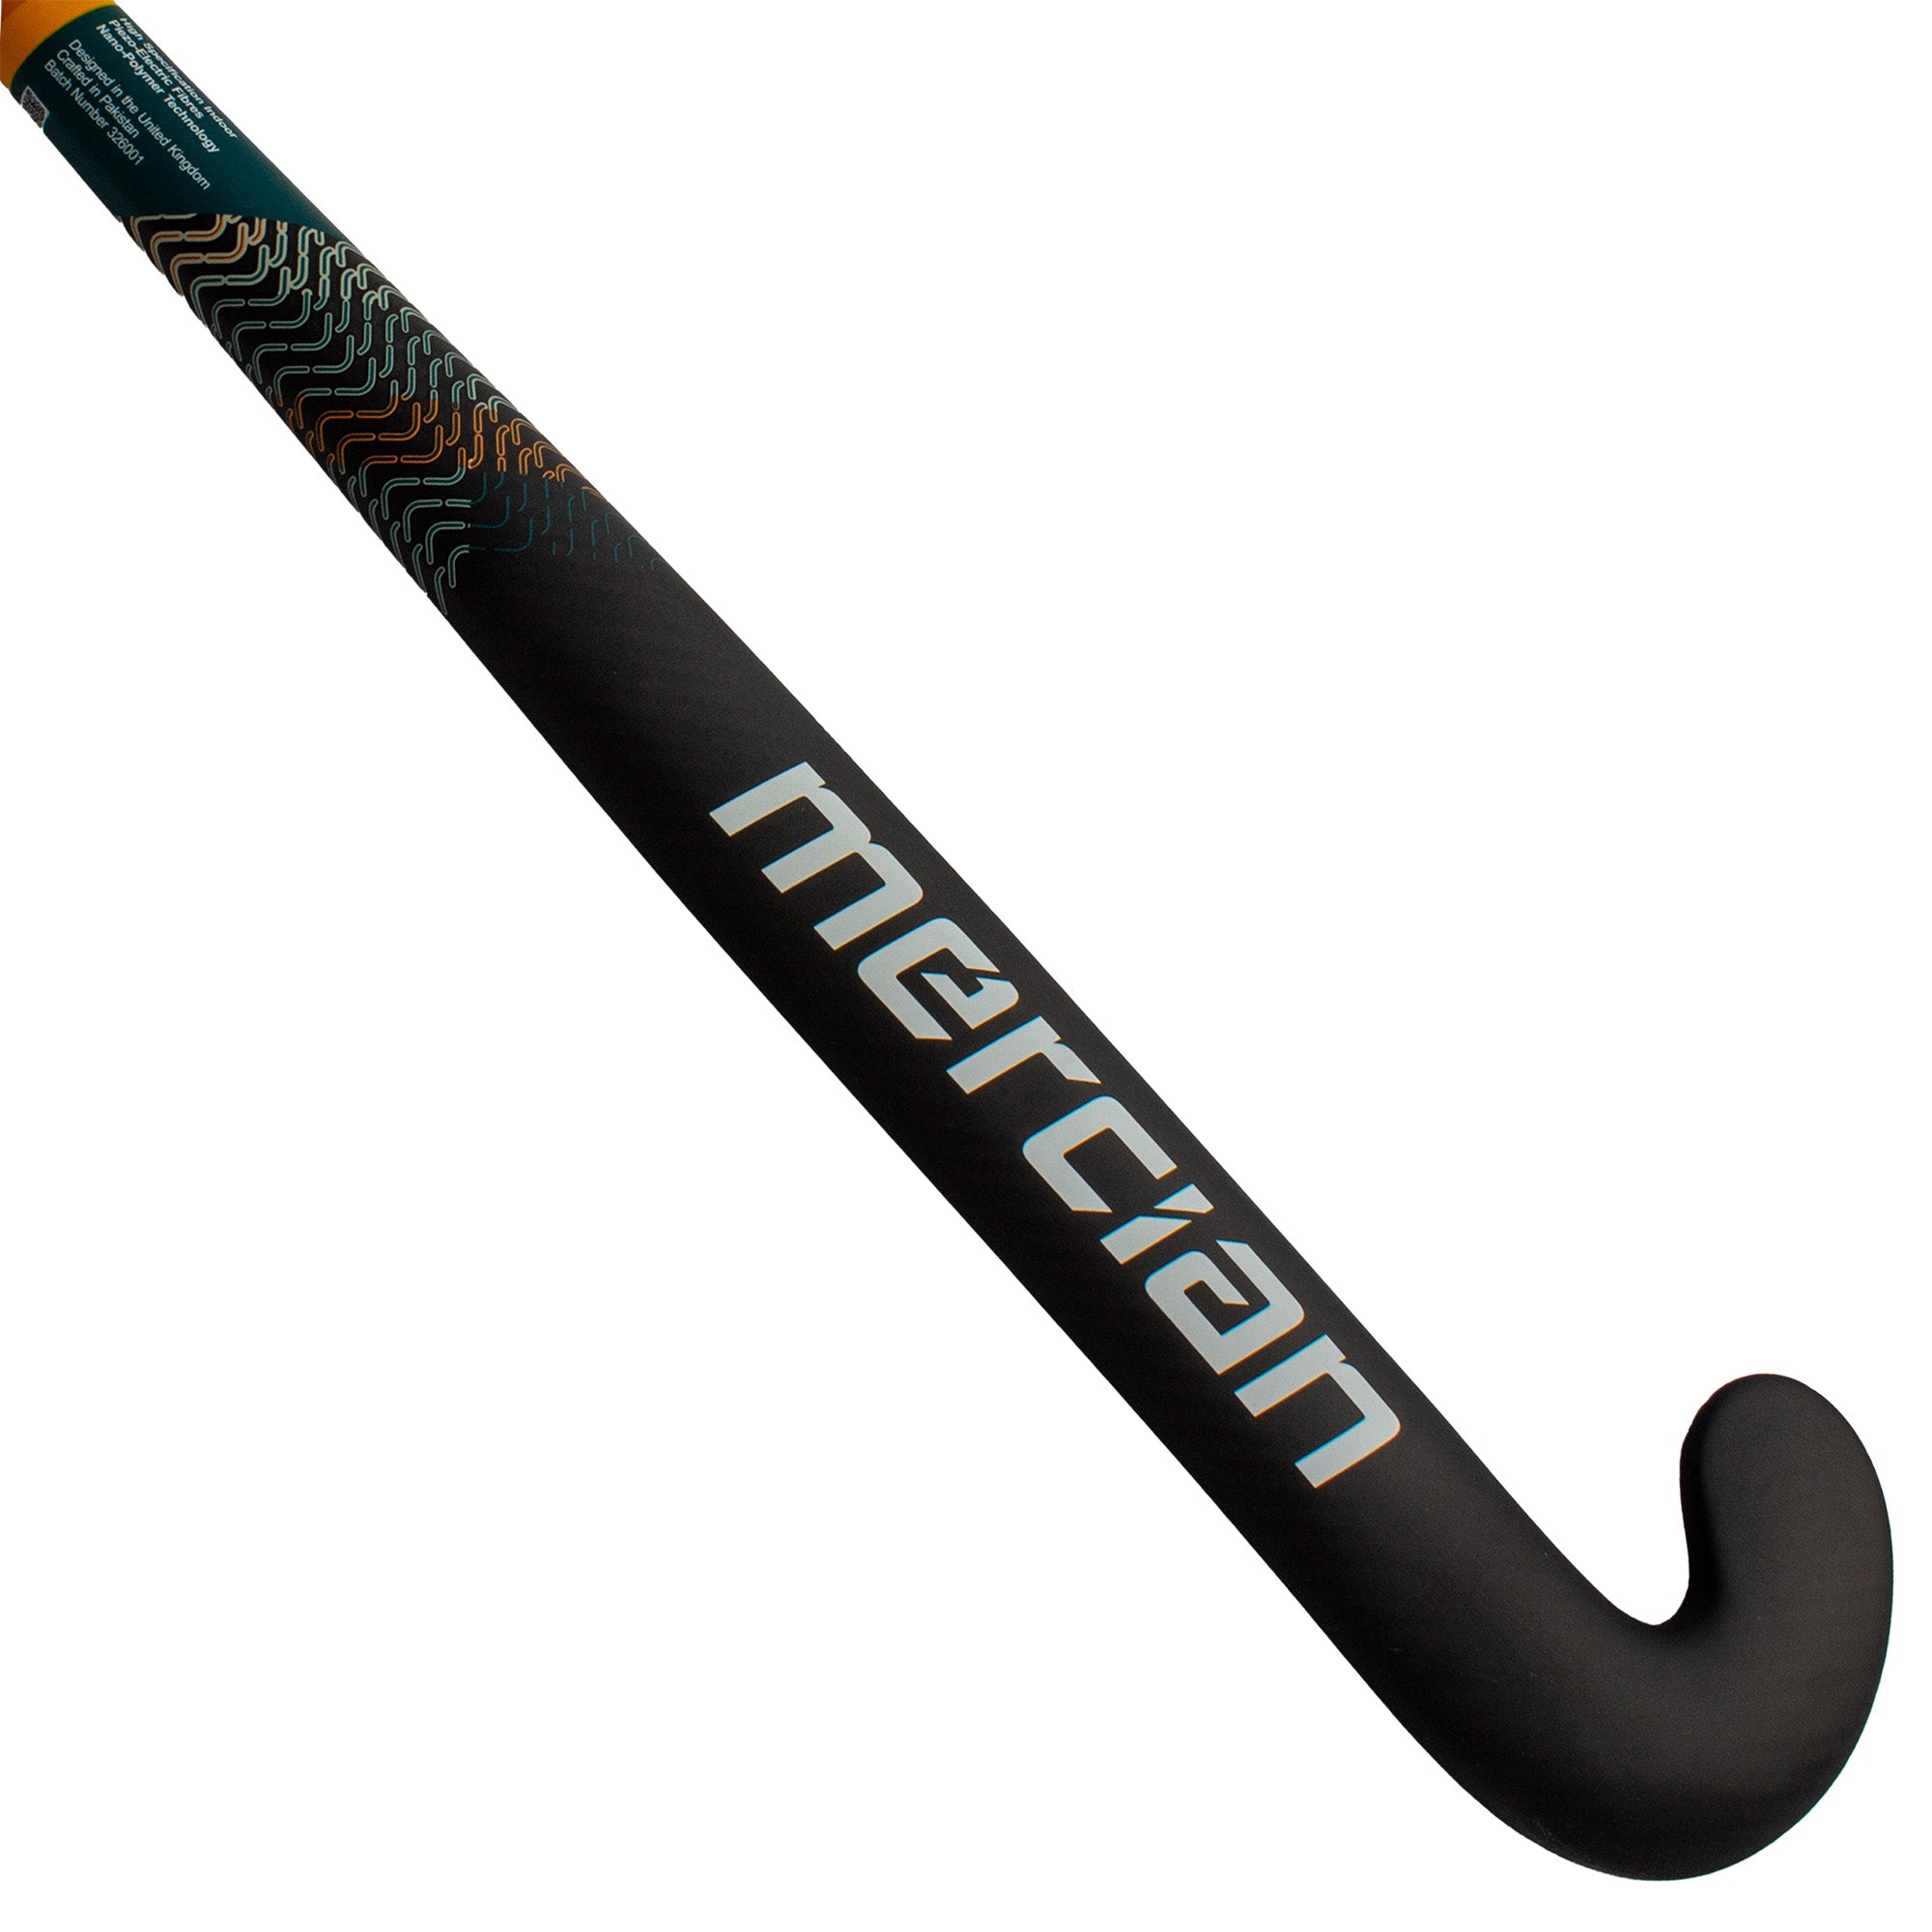 Mercian CKF75i indoor field hockey stick